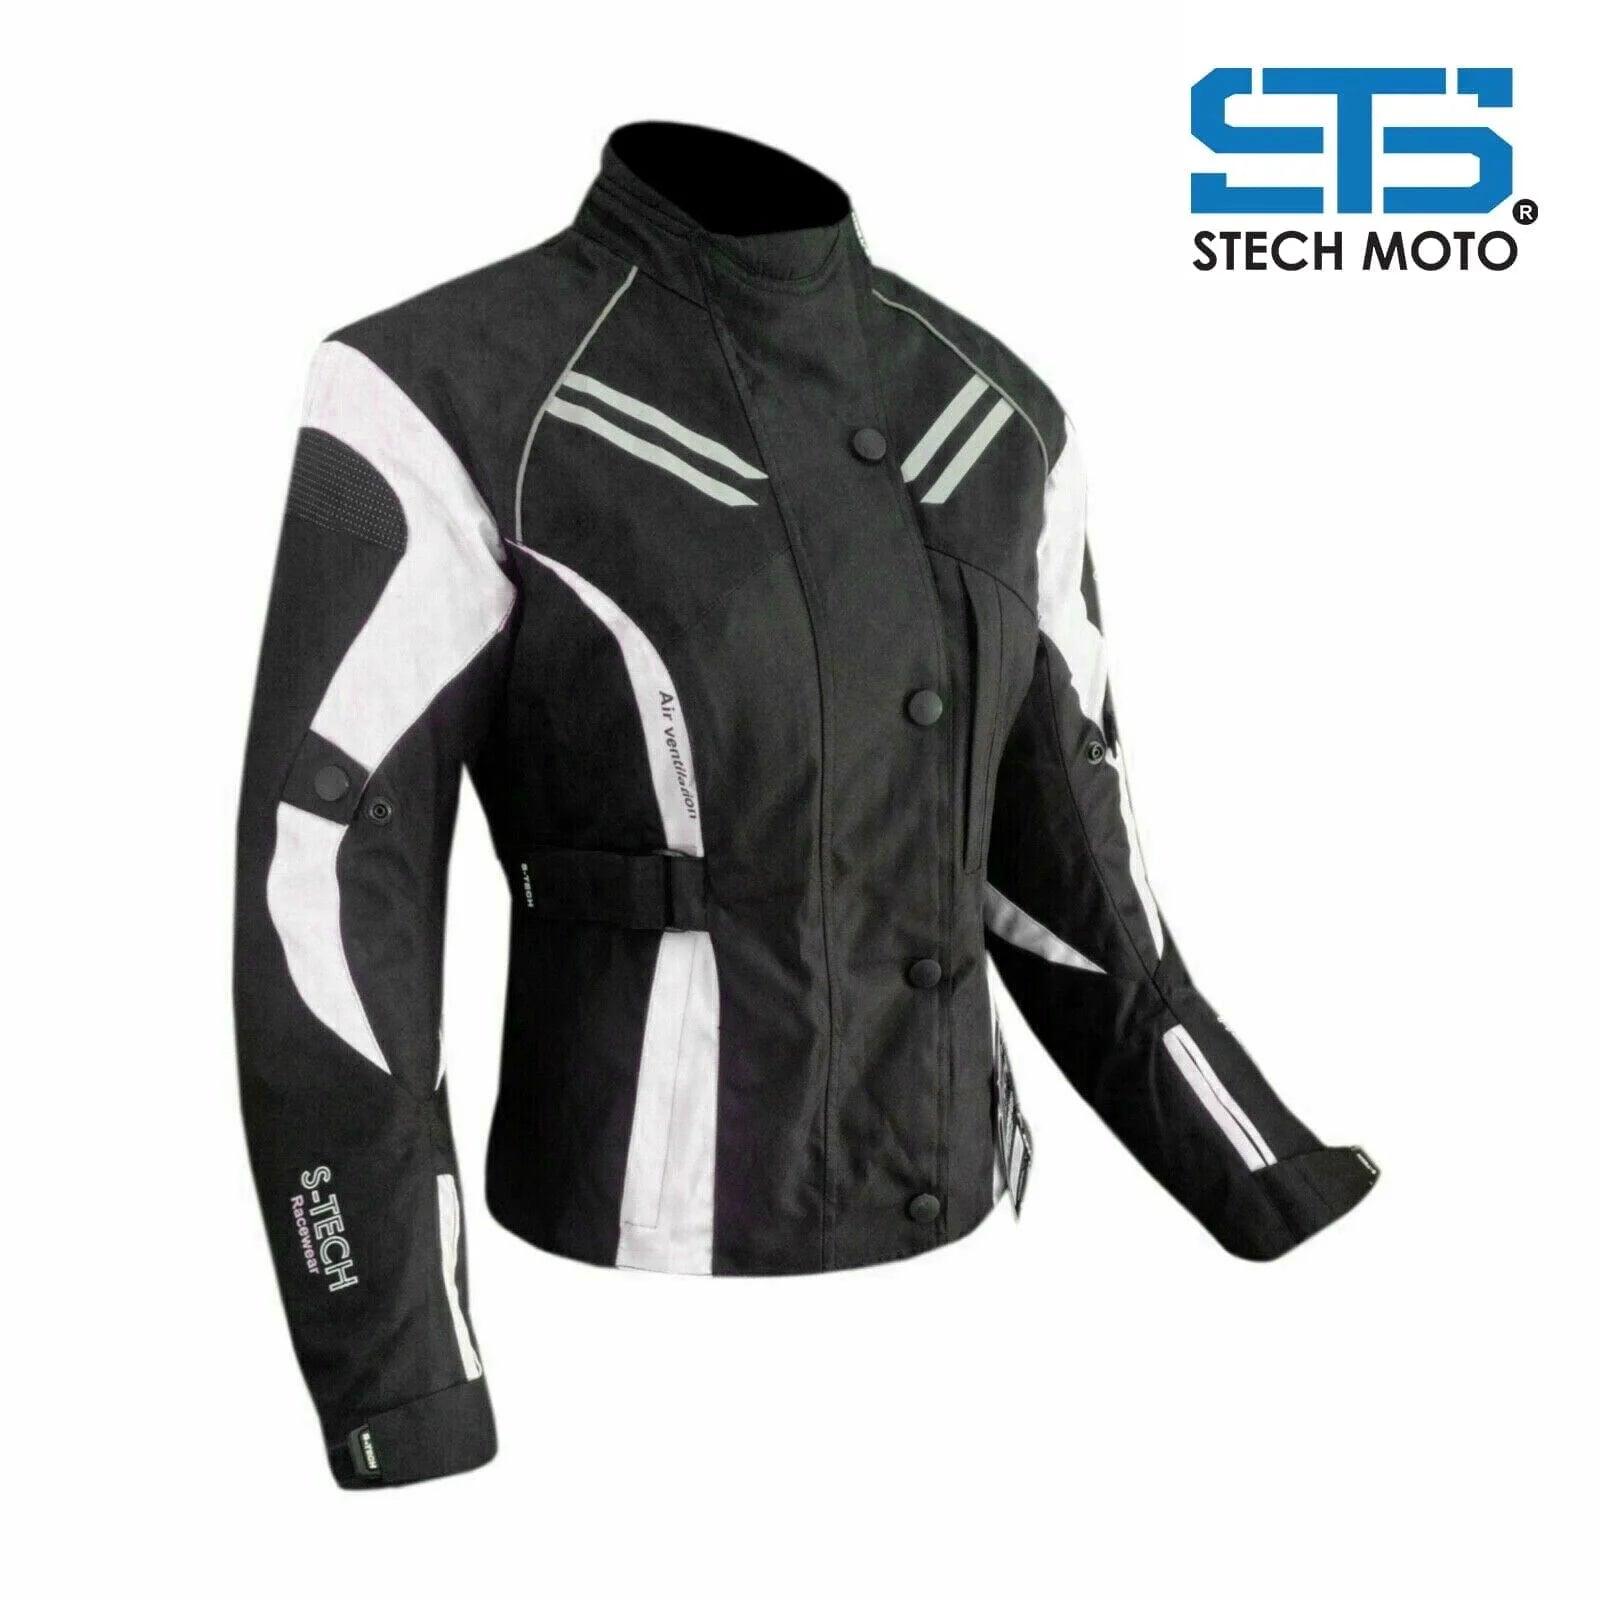 Giubbotto Moto in tessuto da donna Stechmoto ST 840 H2Out 3 Strati 4-stagioni - Am Moto-Abbigliamento Moto